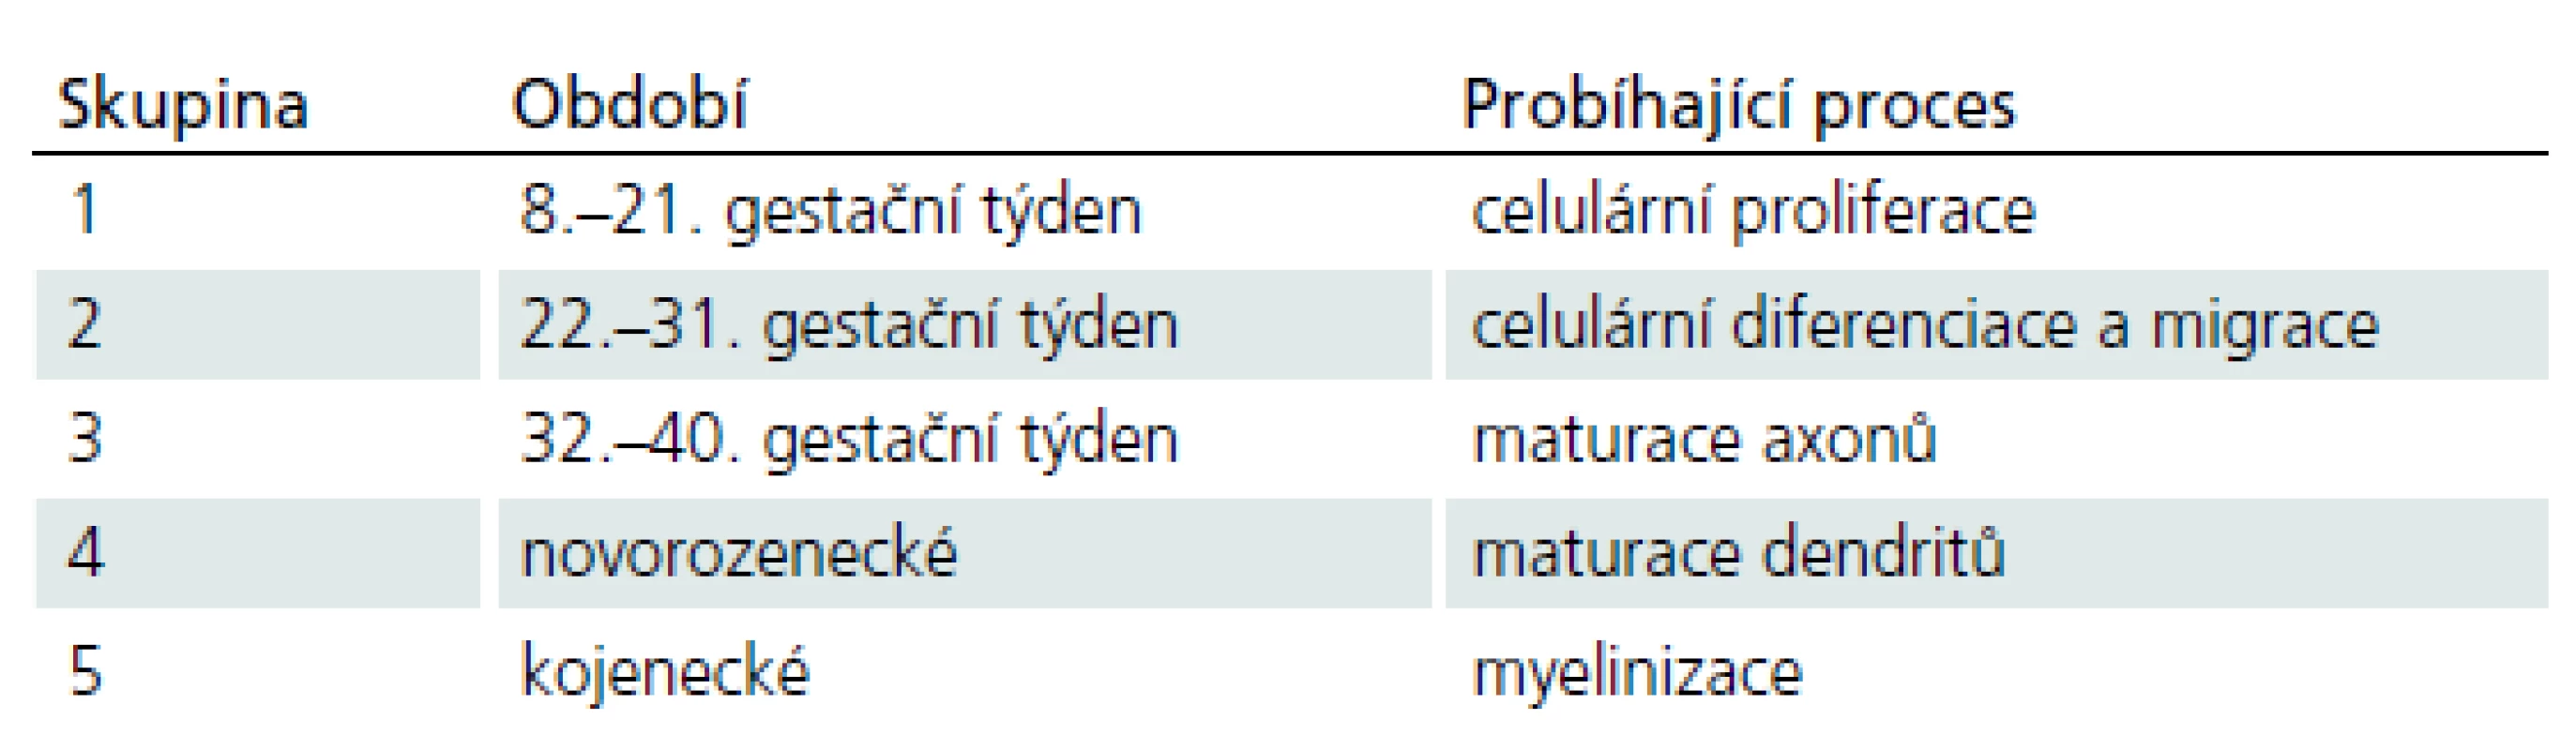 Klasifikace kongenitálního hydrocefalu (Perspective Classification of Congenital Hydrocephalus) do pěti skupin v závislosti na etapě, typu a klinické kategorii kongenitálního hydrocefalu [6].